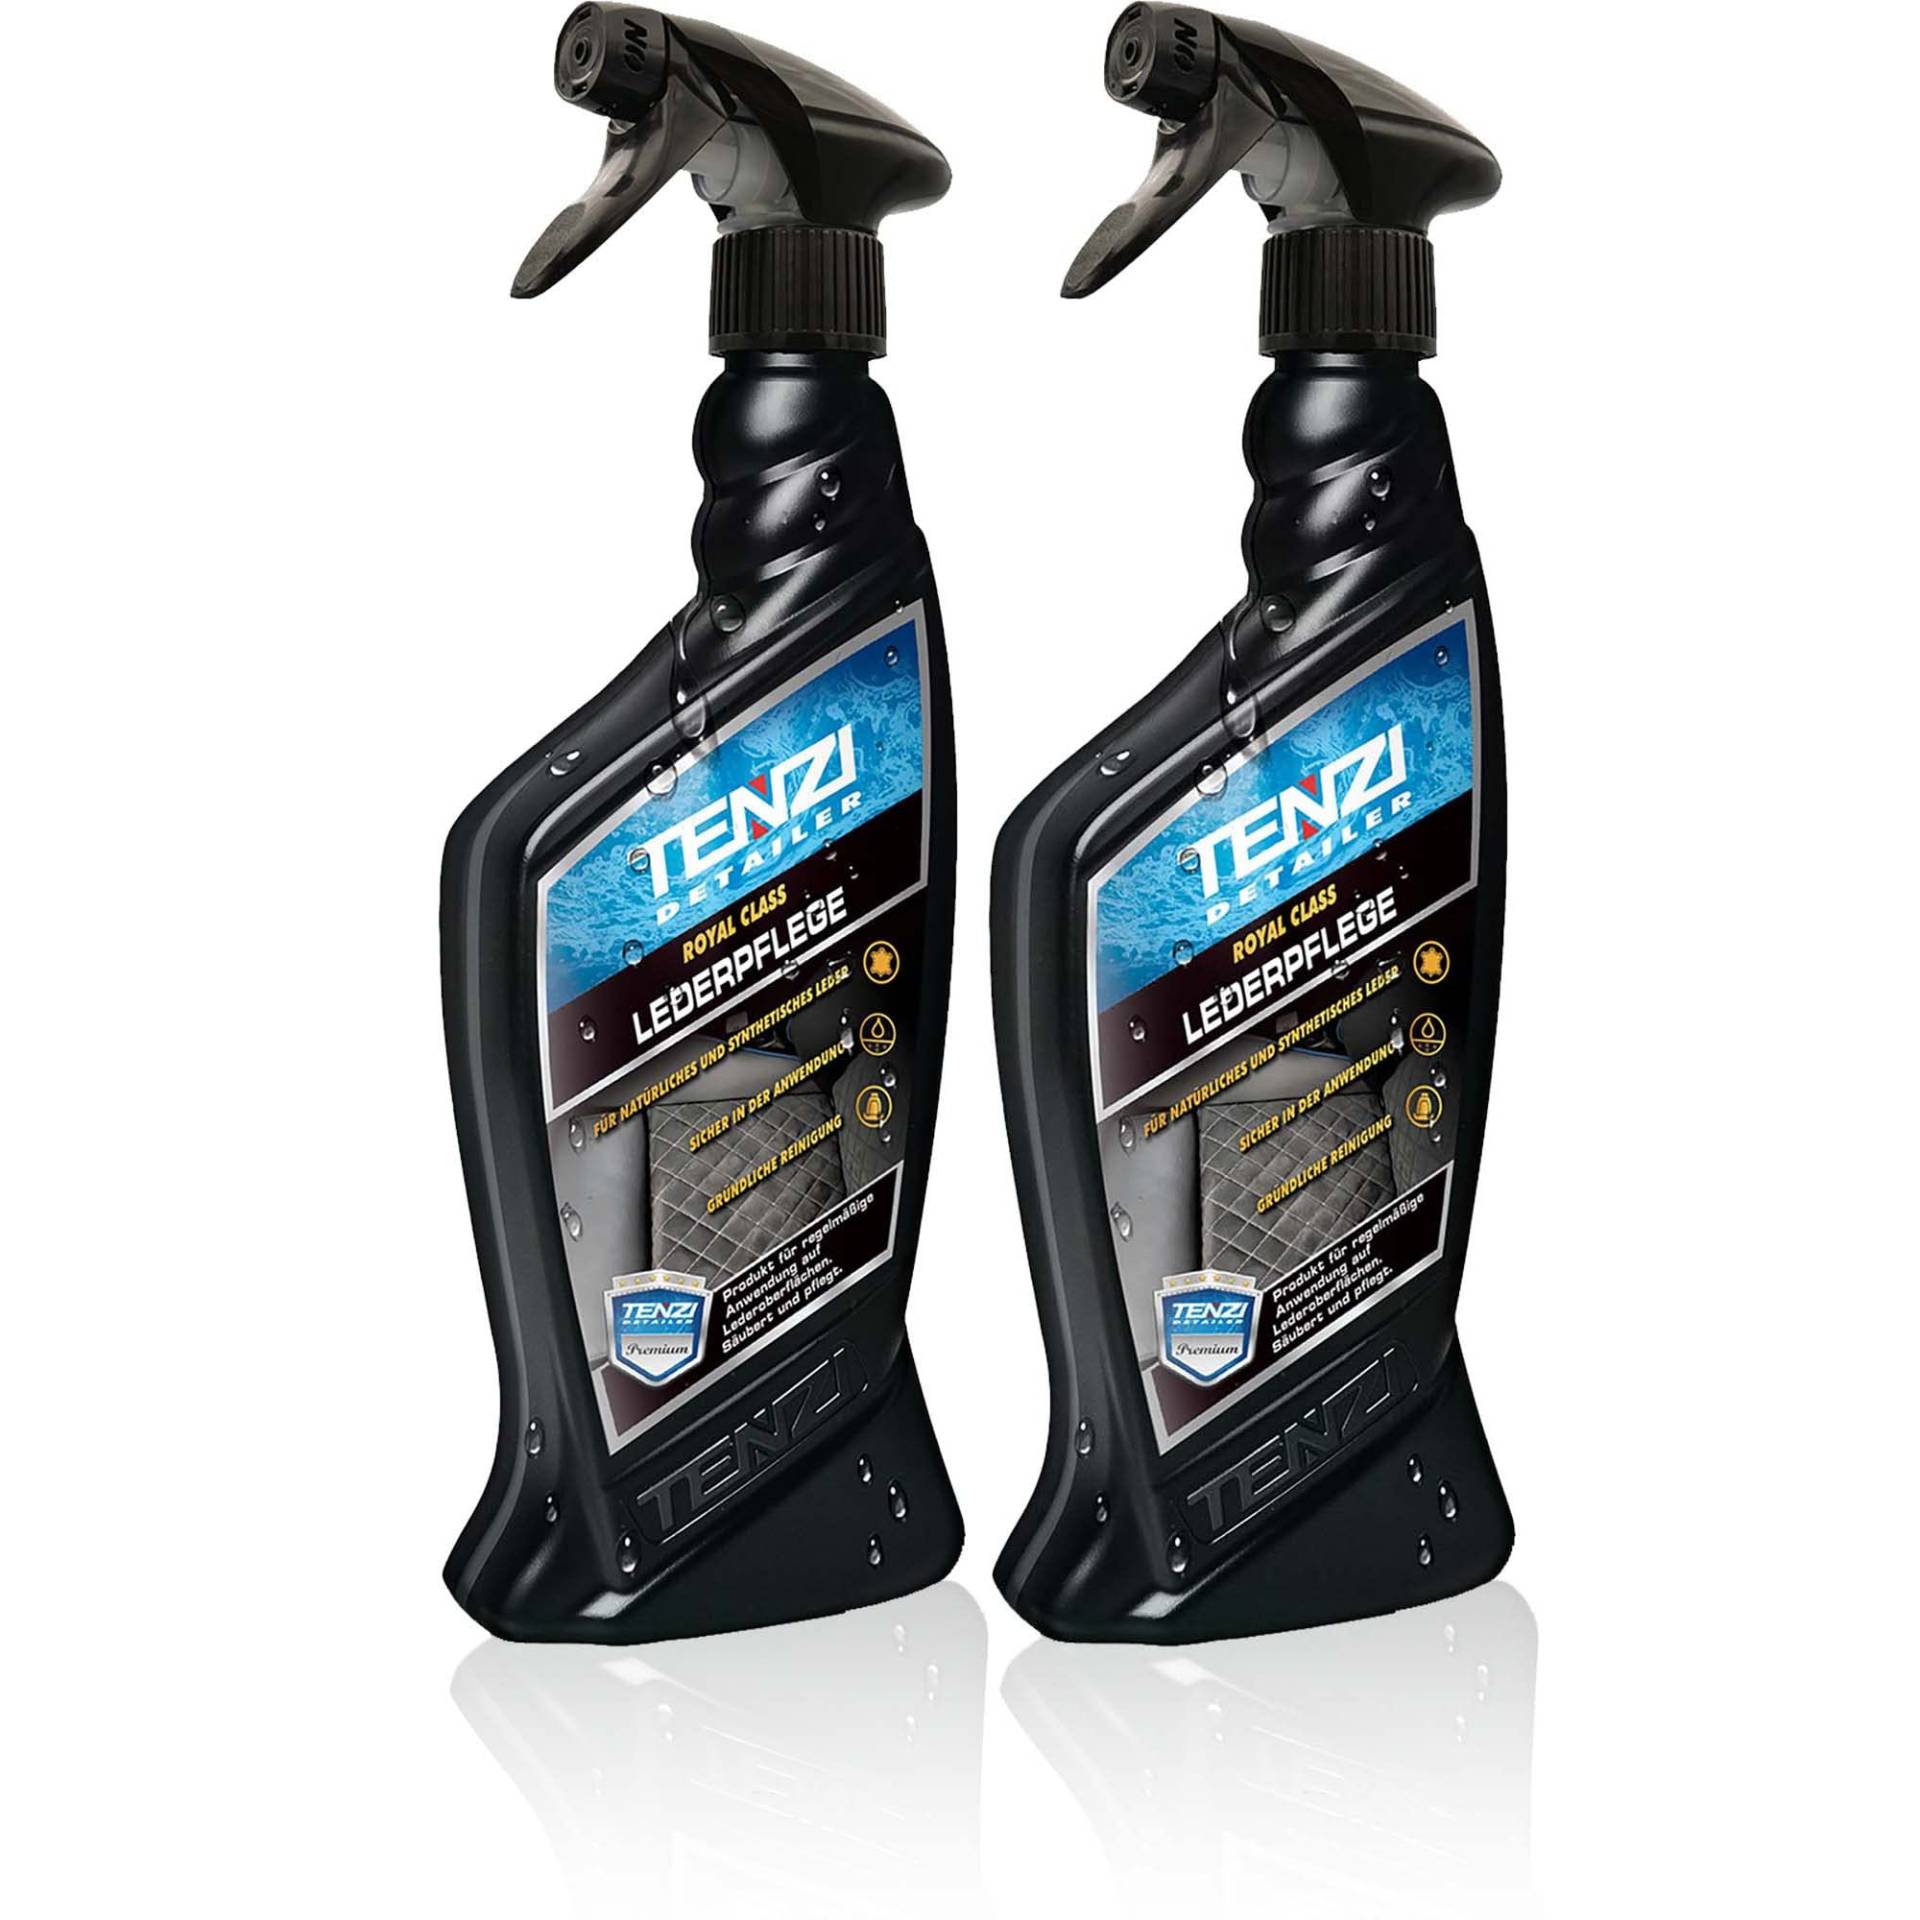 TENZI 2X Premium Lederpflege (600ml) Auto & Motorrad - antistatisch Effekt & für stark verschmutzte Oberflächen, Lederpflege, Autopflege Innenraum, Kunstleder, Echtleder, Naturleder Interior Pflege von TENZI